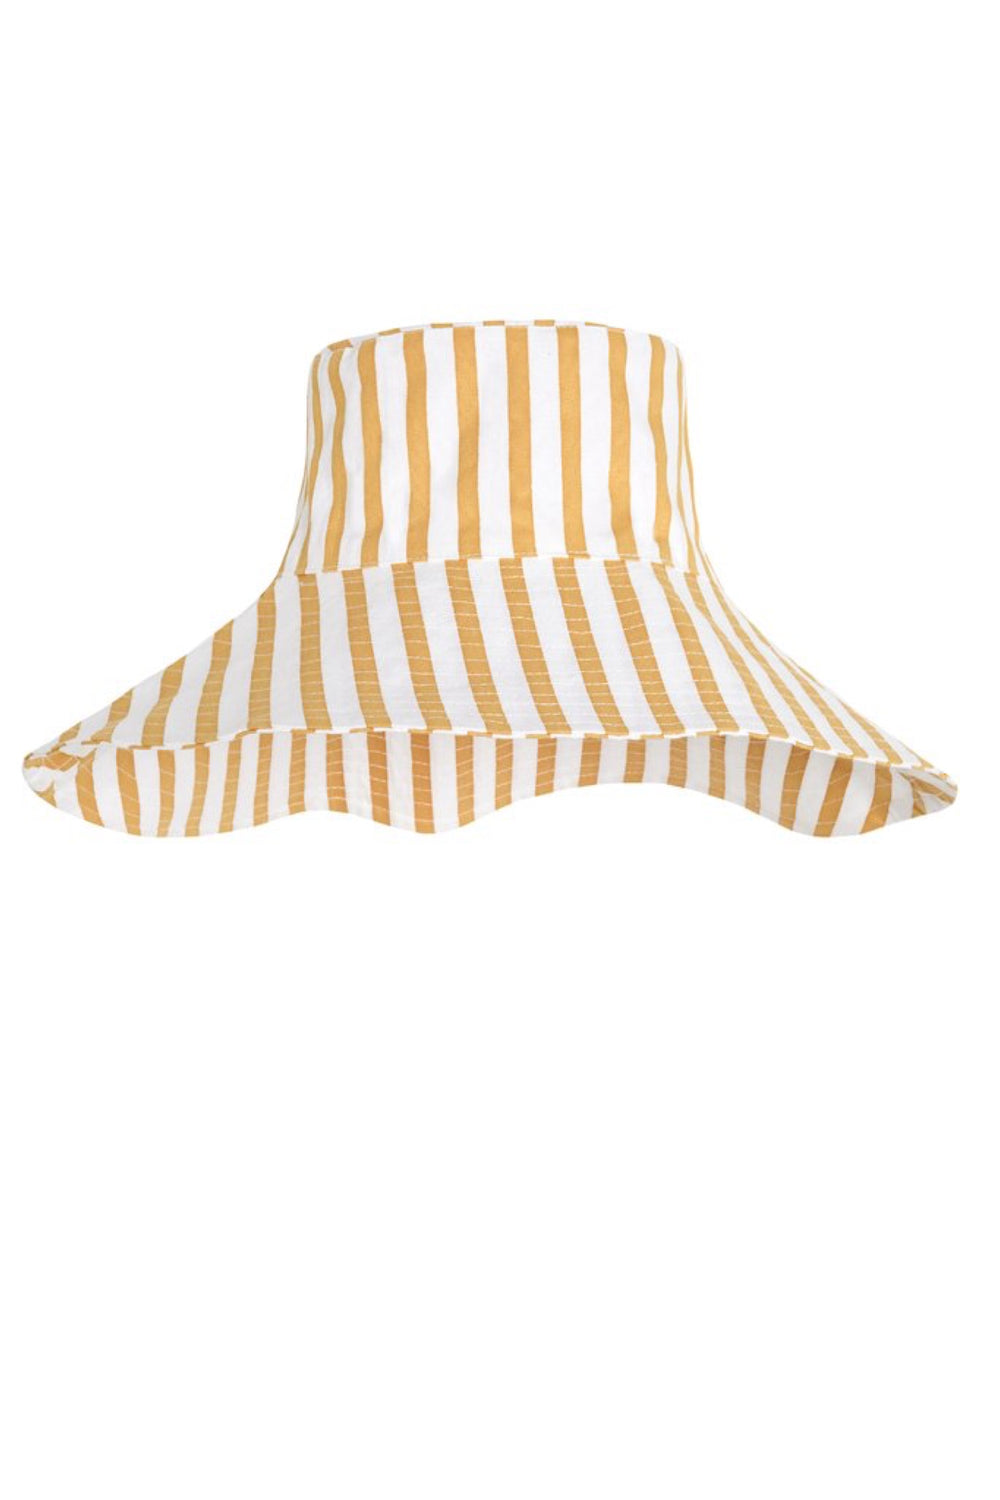 Martie Stripe Steffany Sun Hat